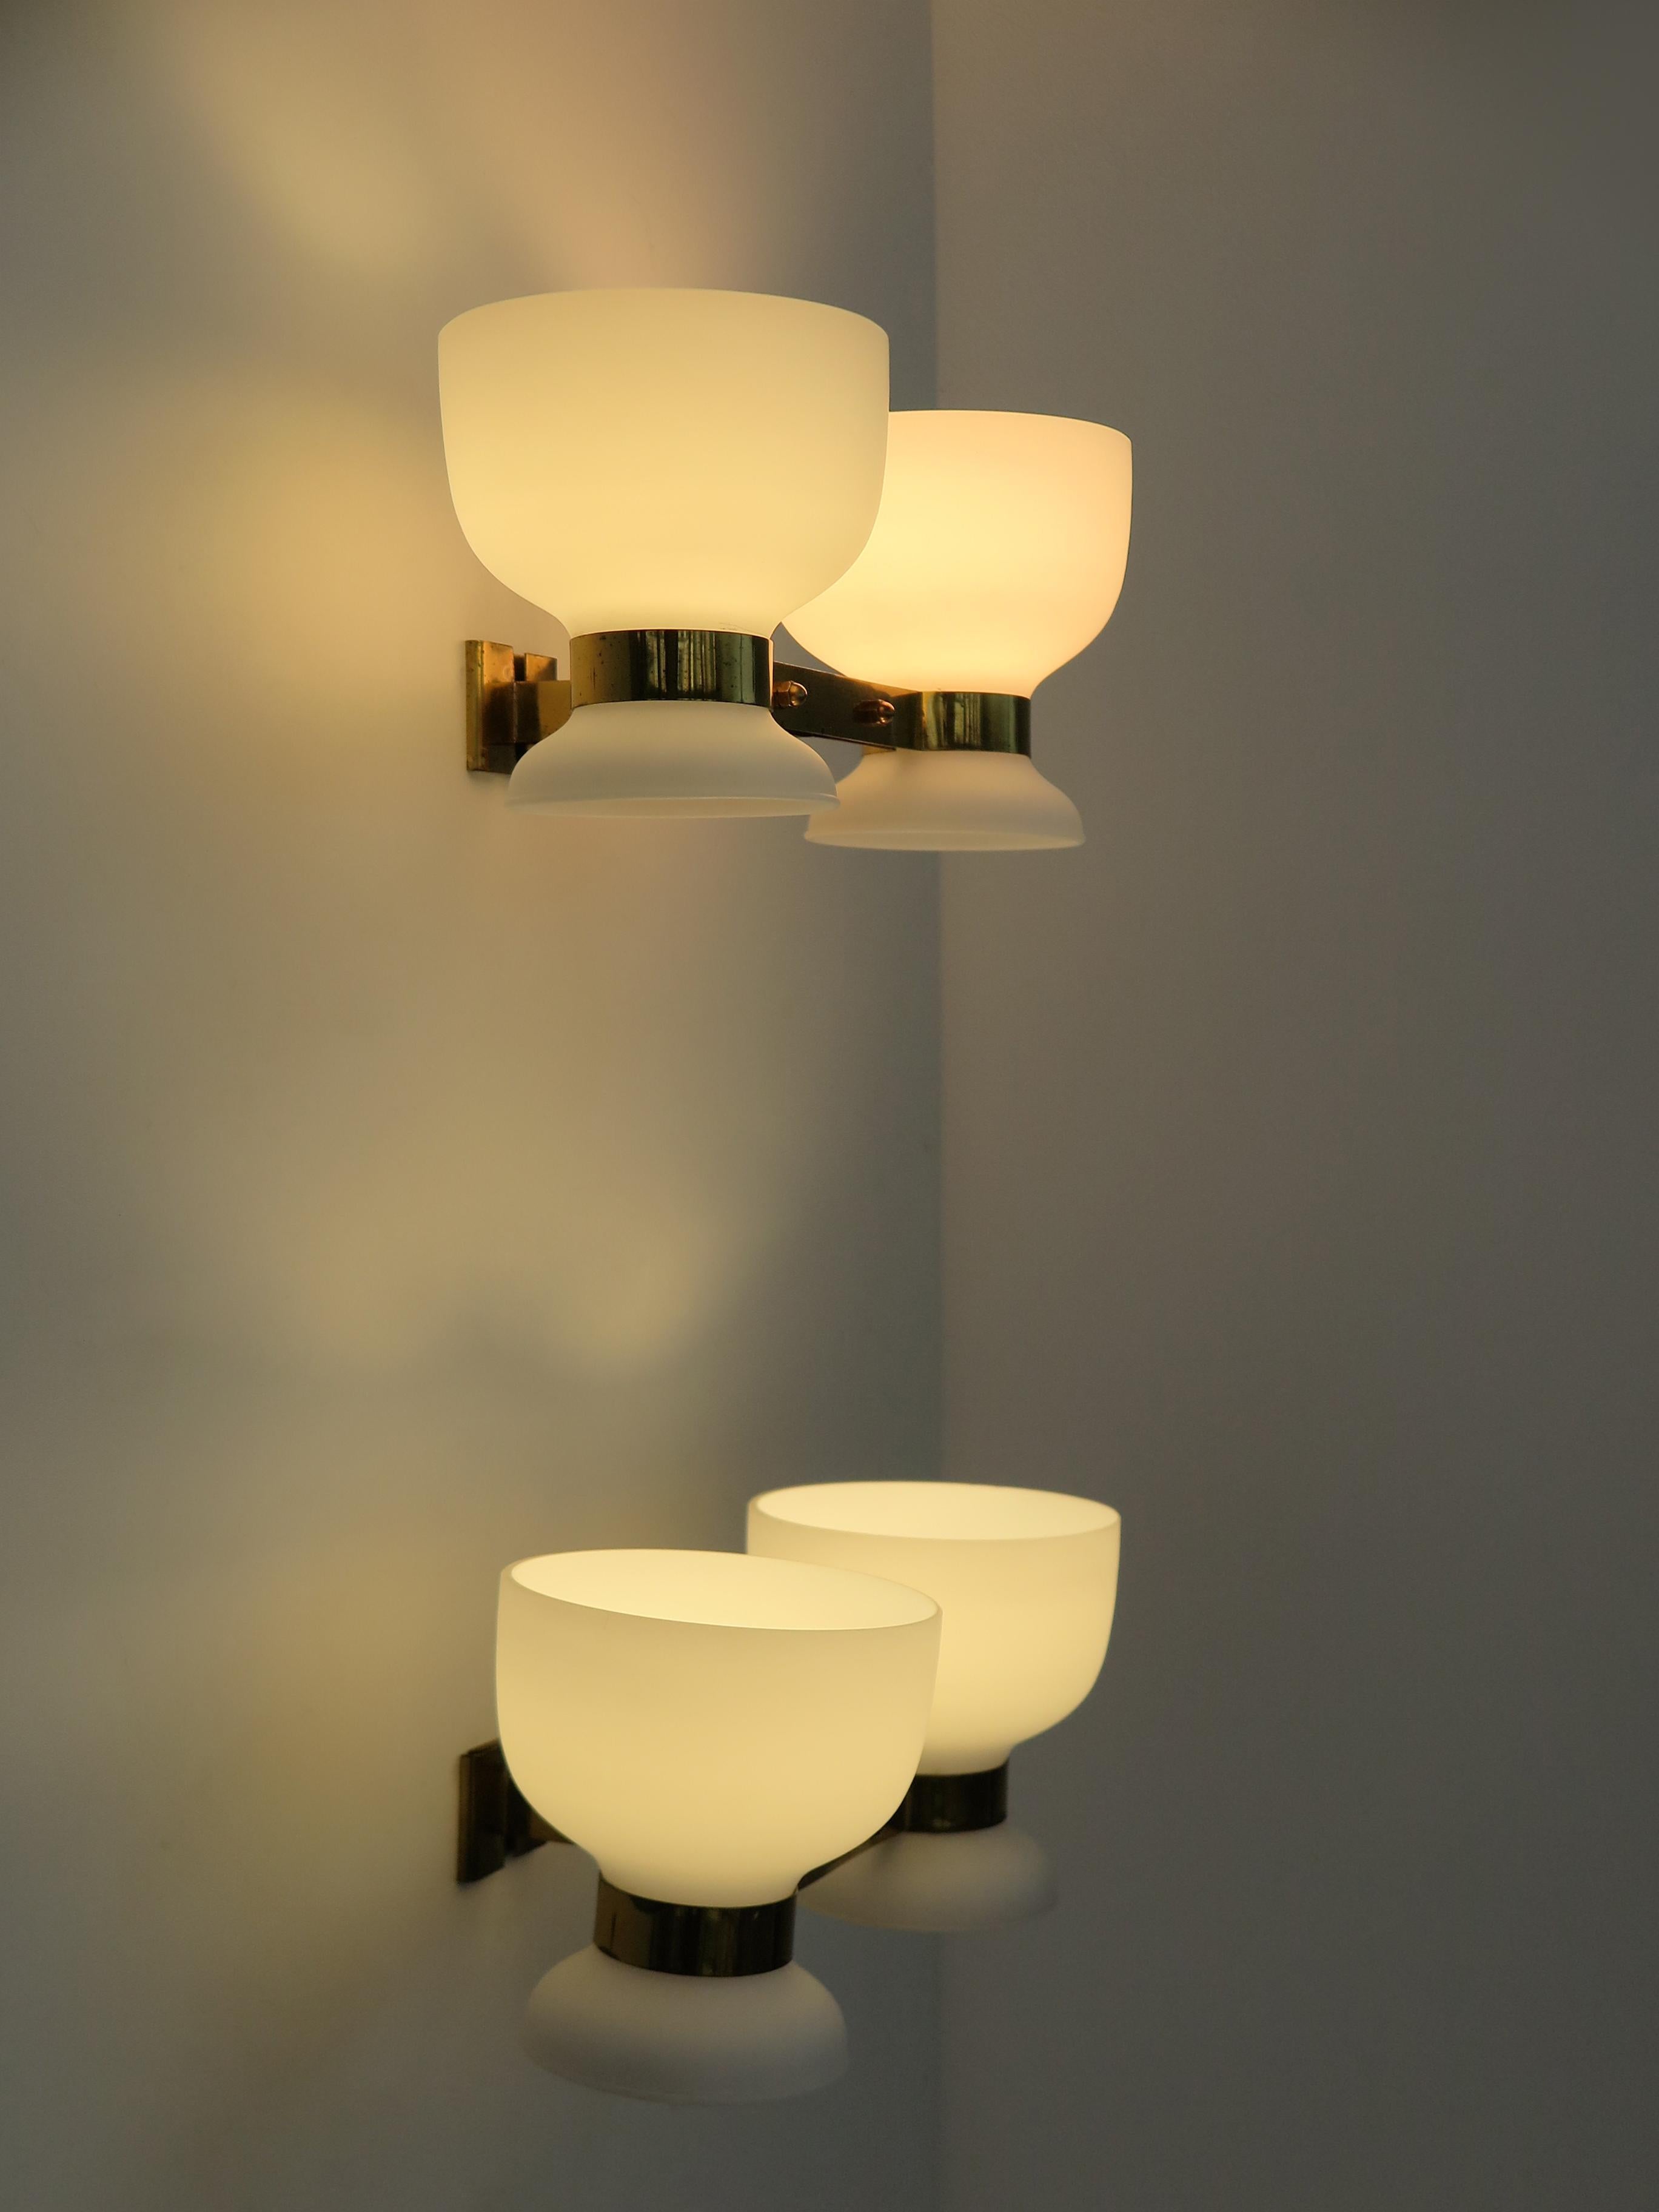 Paar Wandlampen von Stilnovo mit mattweißen Opalglasdiffusoren und Messingrahmen, Produktion Italien 1950er Jahre

Beachten Sie, dass die Lampe original aus dieser Zeit stammt und die normalen Alters- und Gebrauchsspuren aufweist.